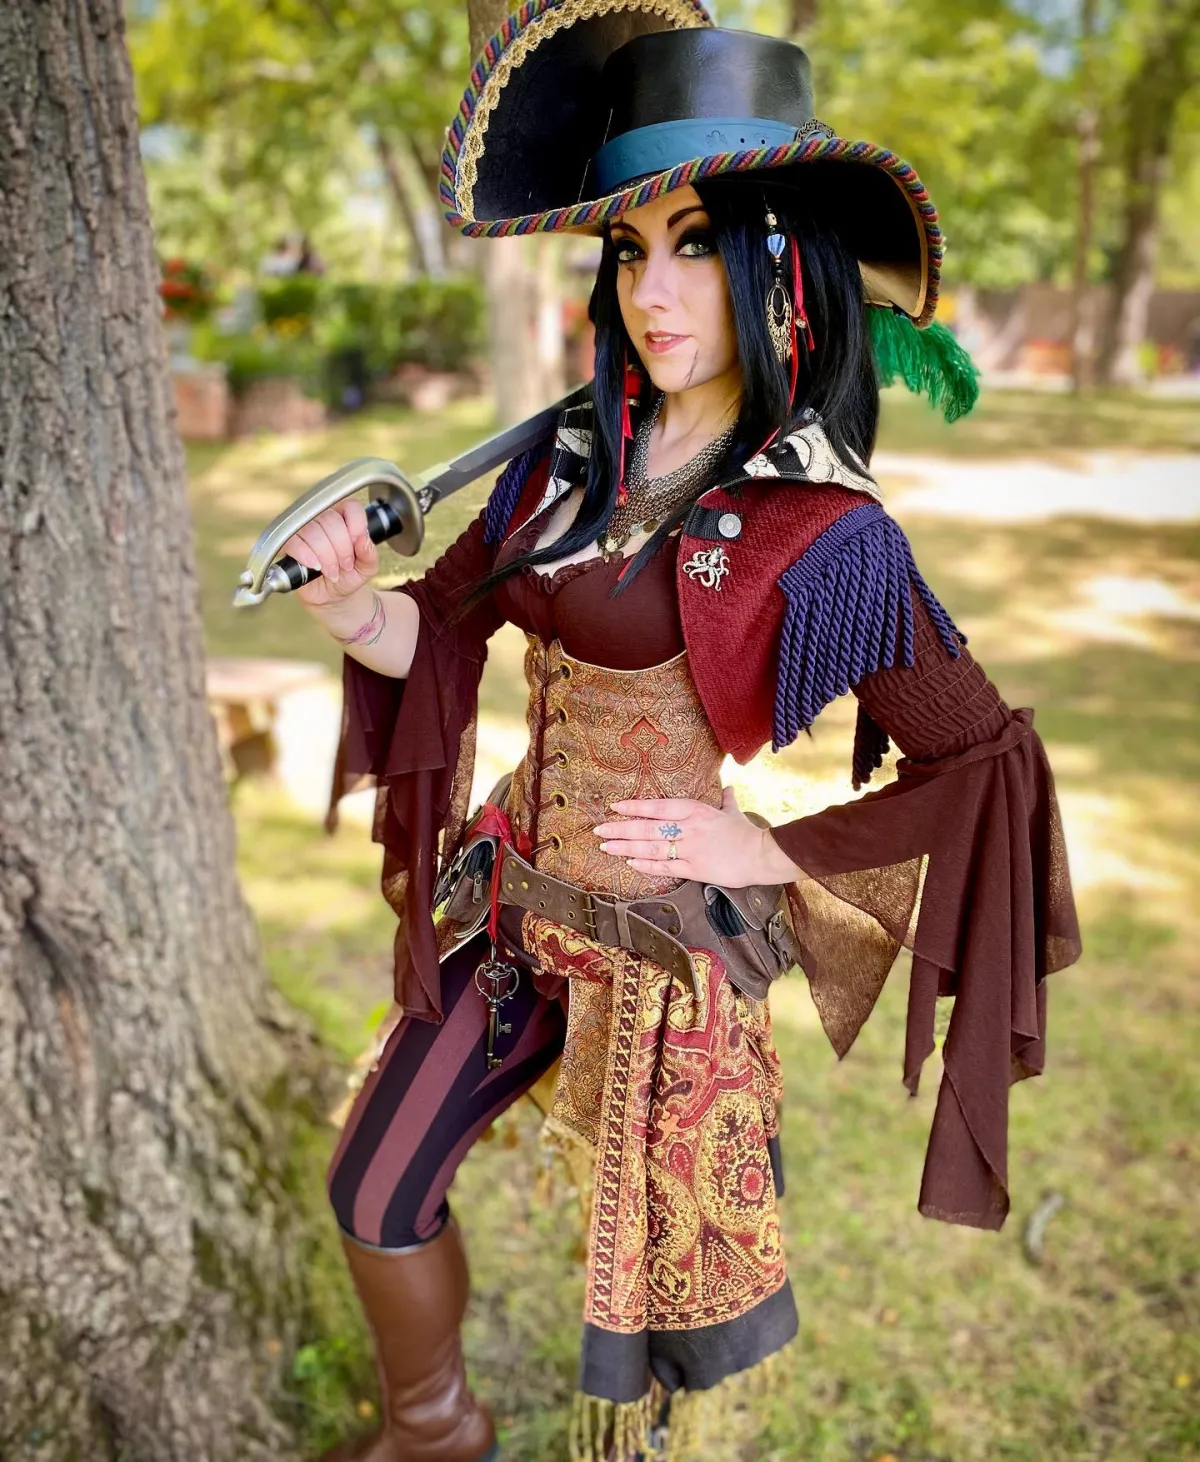 fasching kostüm pirat mit säbel und großem hut